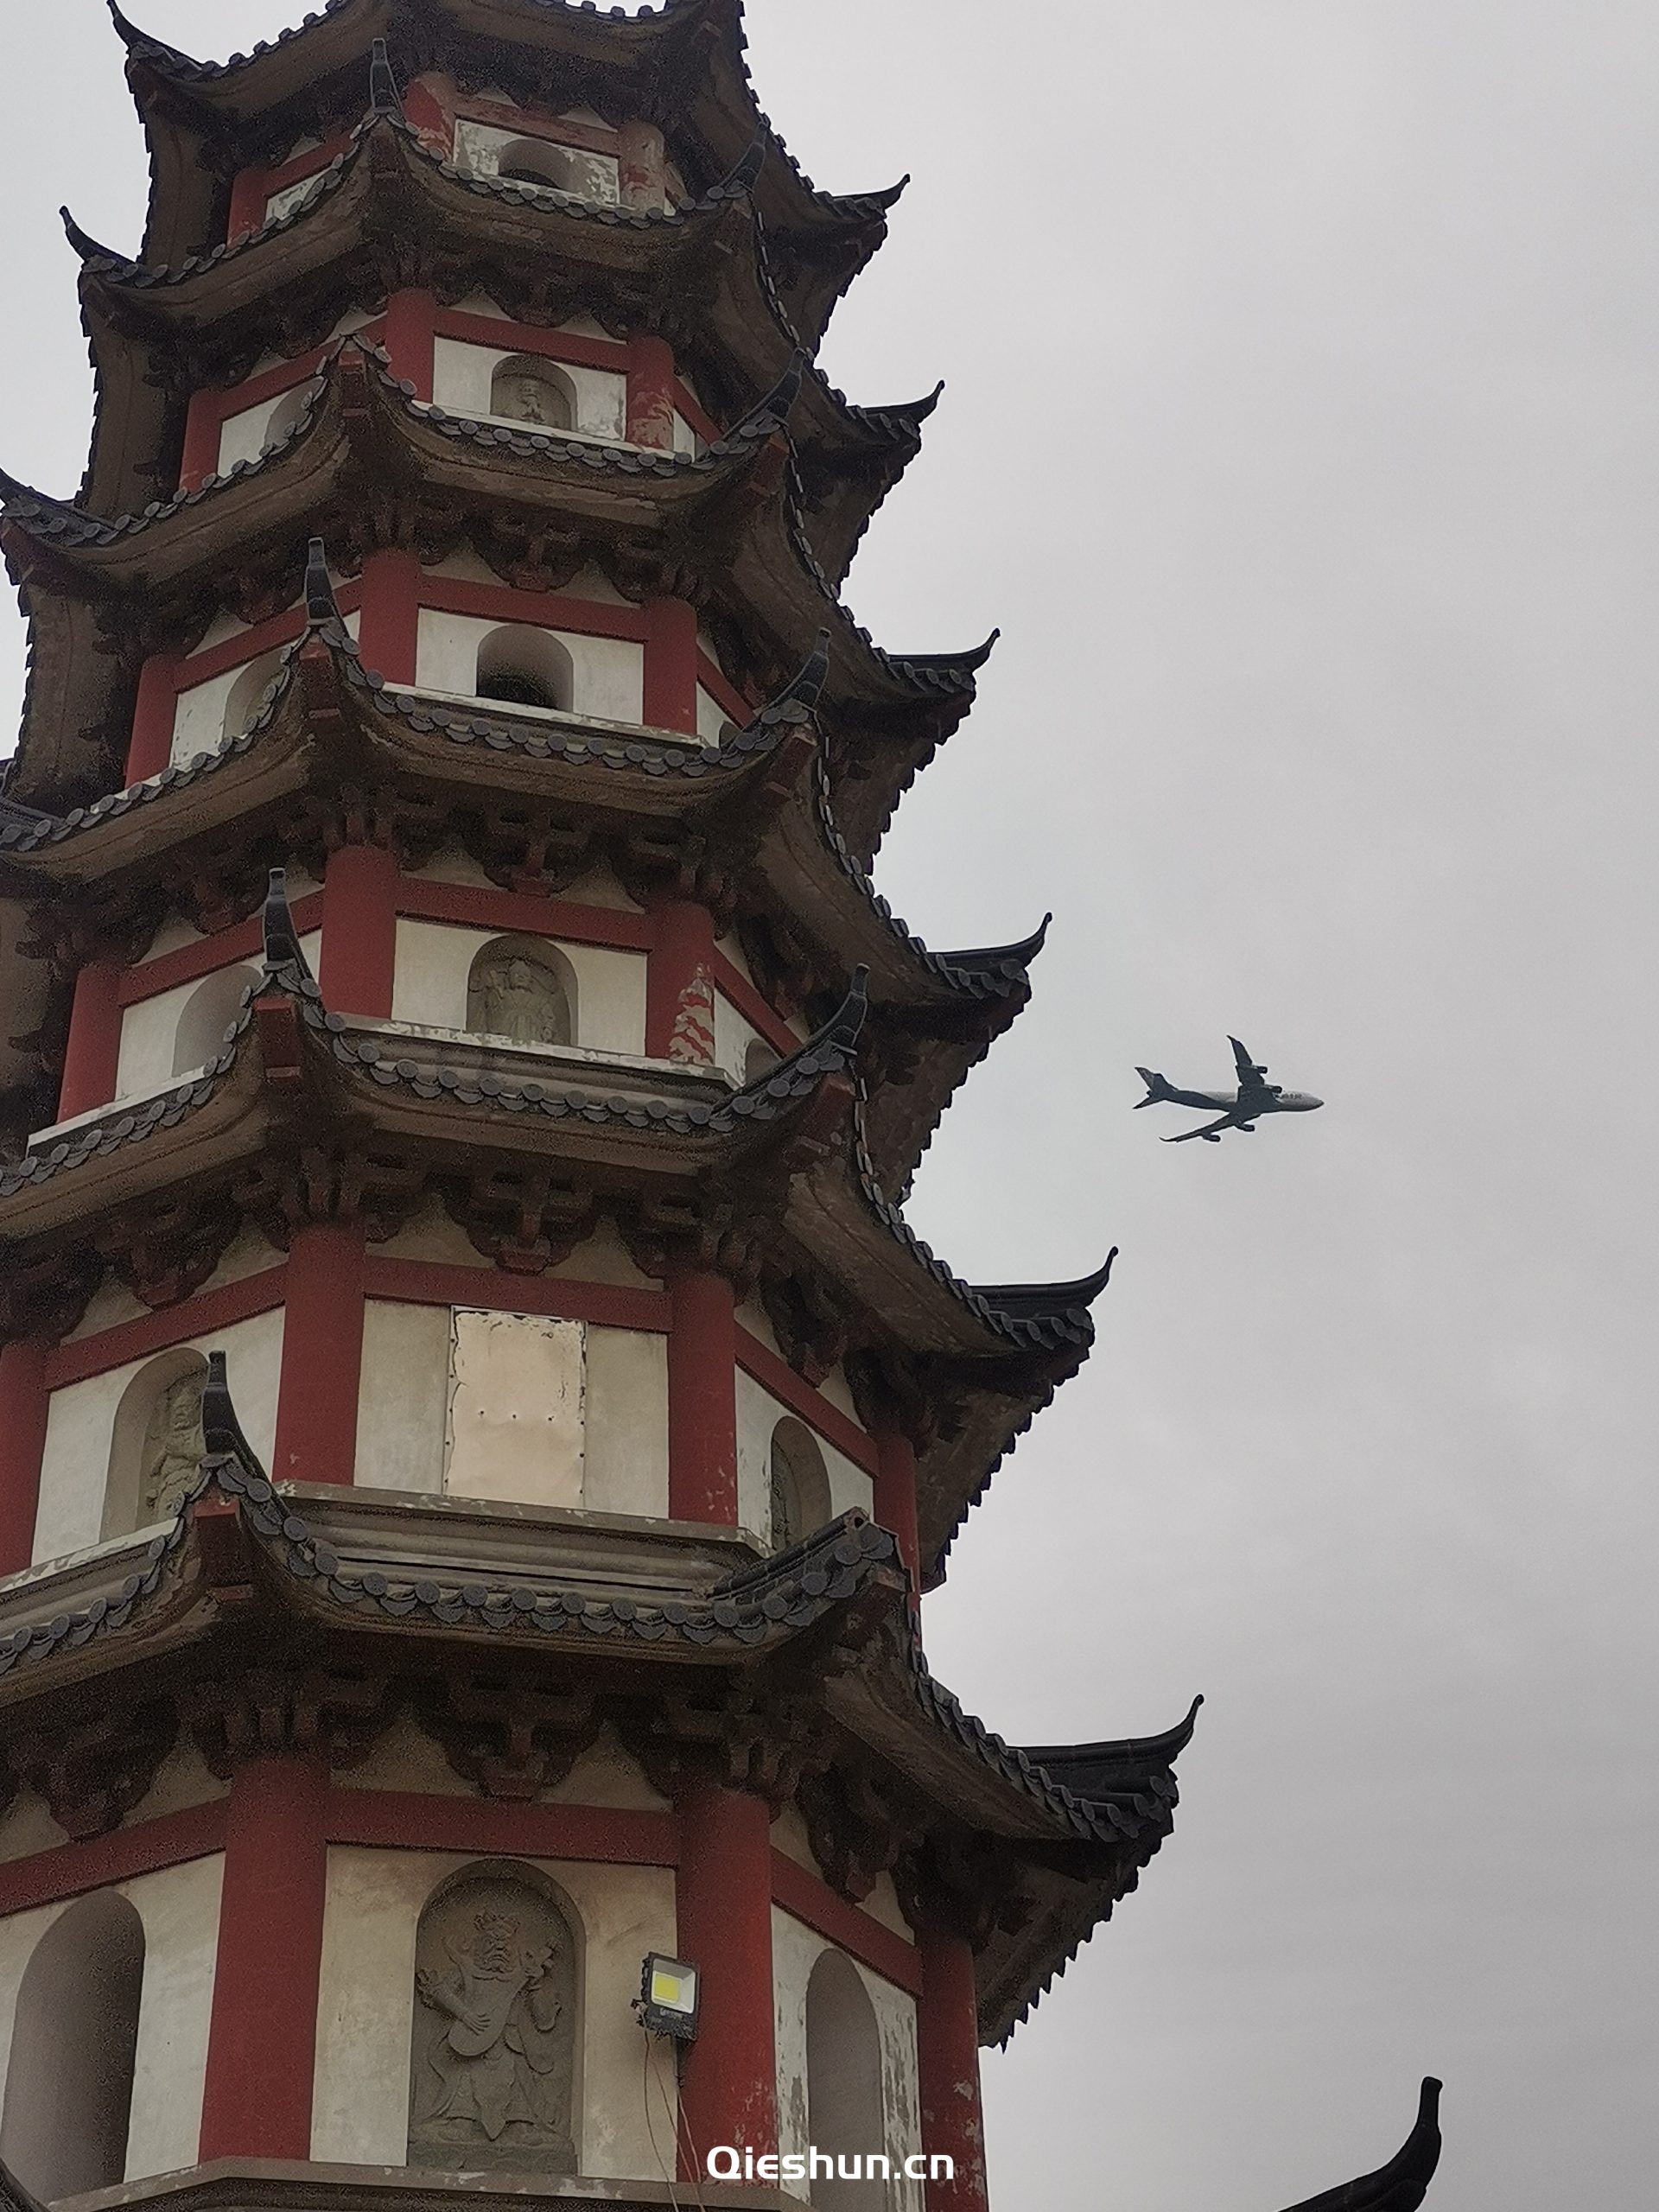 飞机掠过先照禅寺·金刚塔